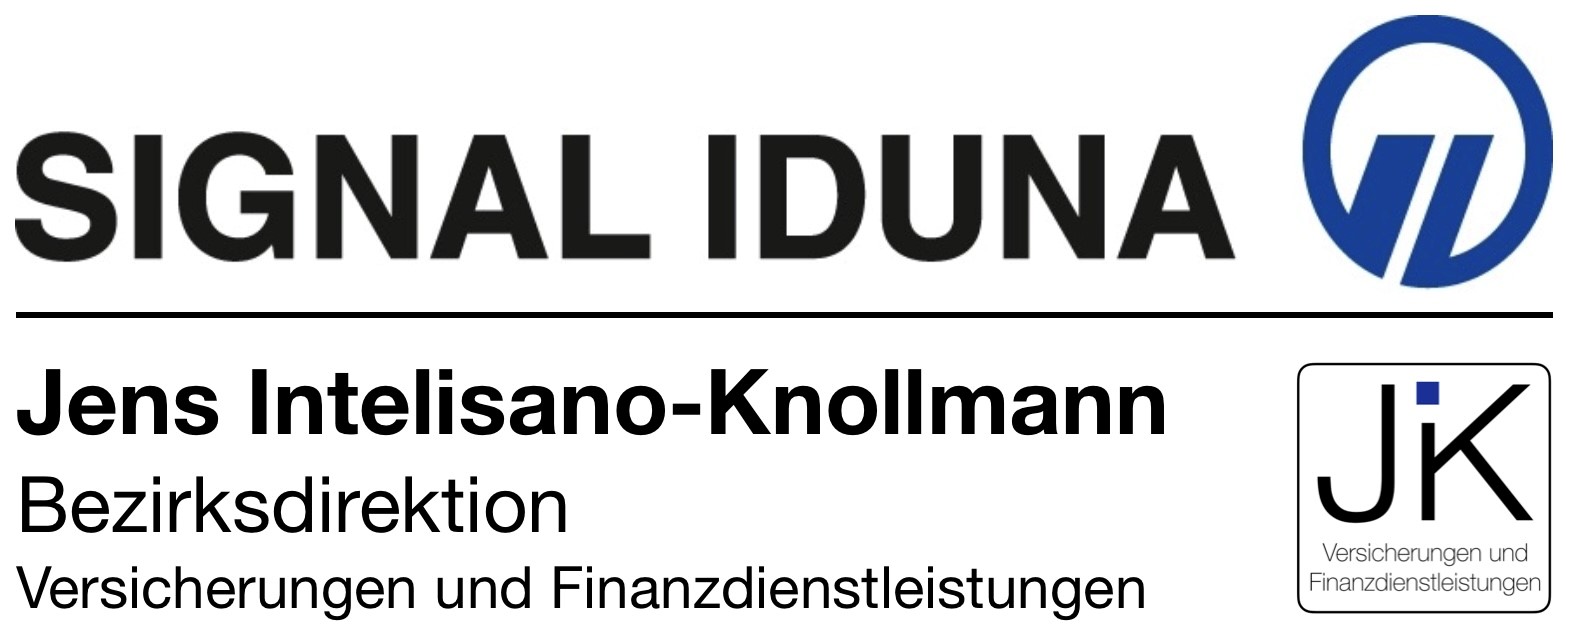 SIGNAL IDUNA Versicherung Jens Intelisano-Knollmann, Karlsruher Str. 19 in Ketsch